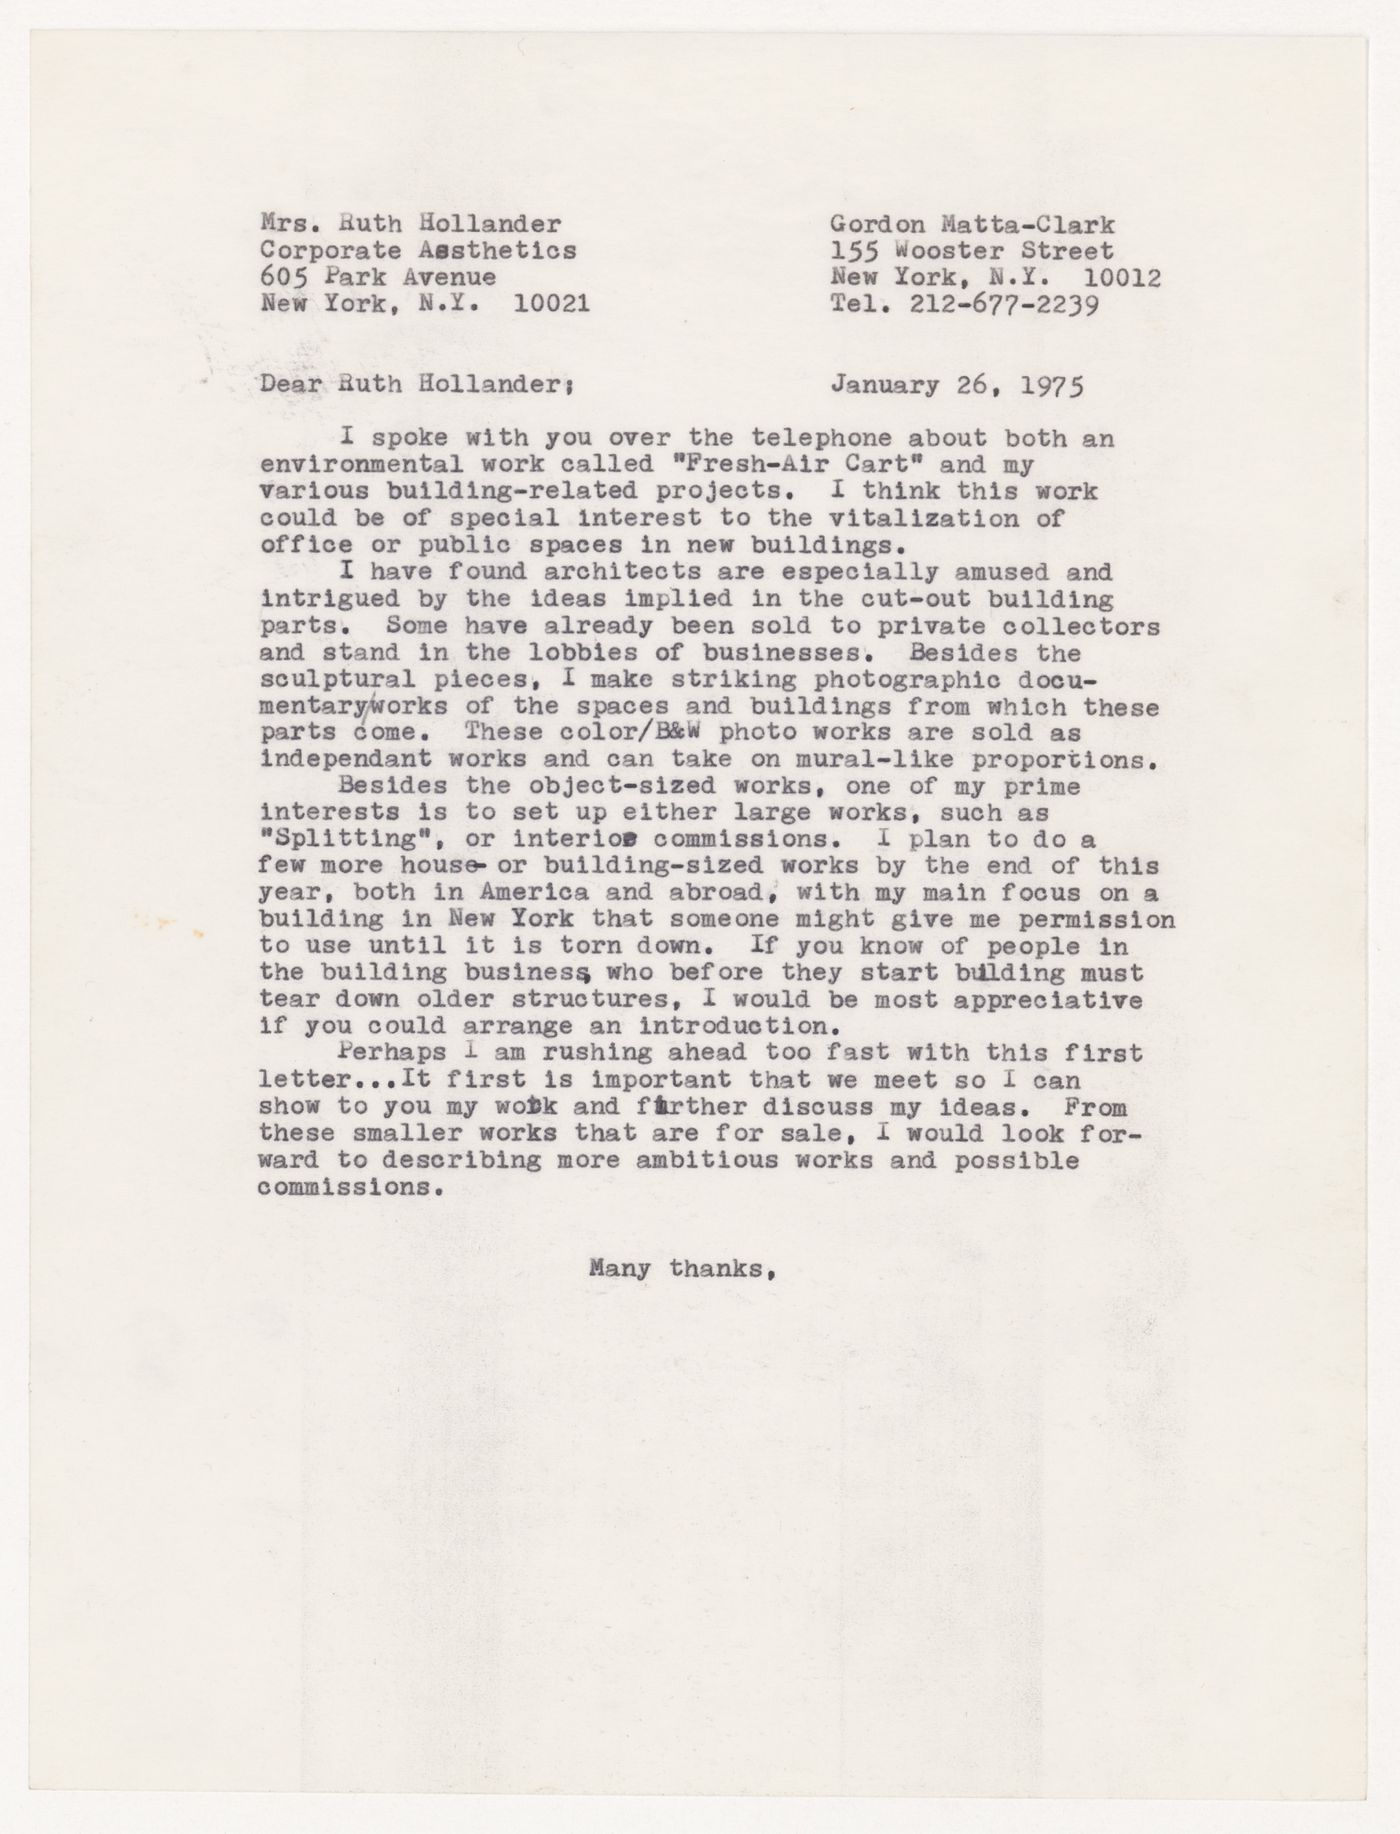 Letter from Gordon Matta-Clark to Ruth Hollander